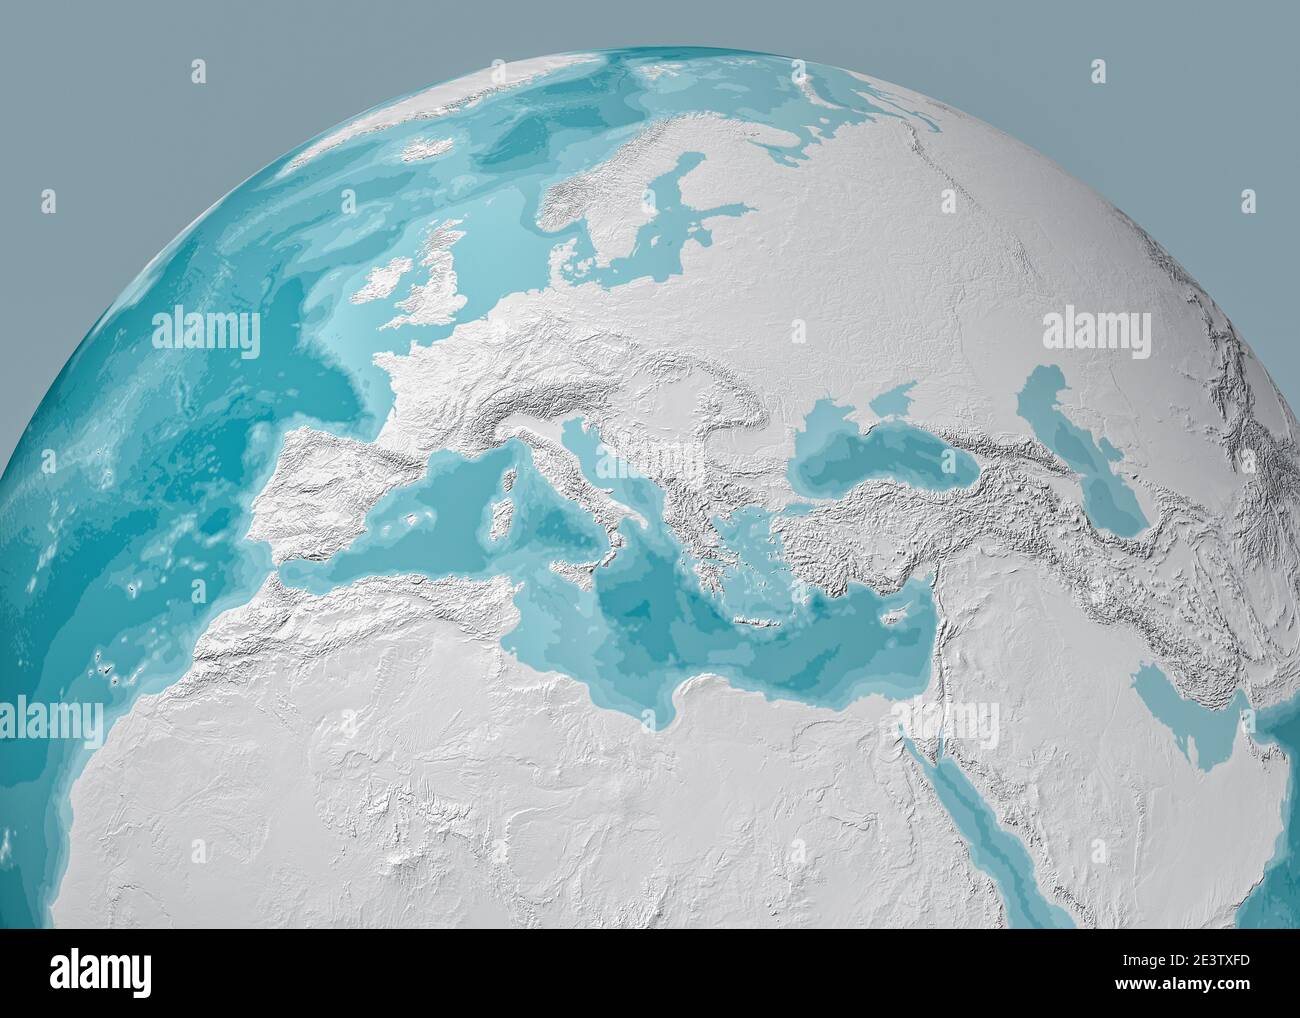 Weltkarte des Mittelmeers und Europas, Afrikas und des Nahen Ostens. Kartographie, geographischer Atlas. 3d-Rendering. Bathymetrie, Unterwassertiefe Stockfoto